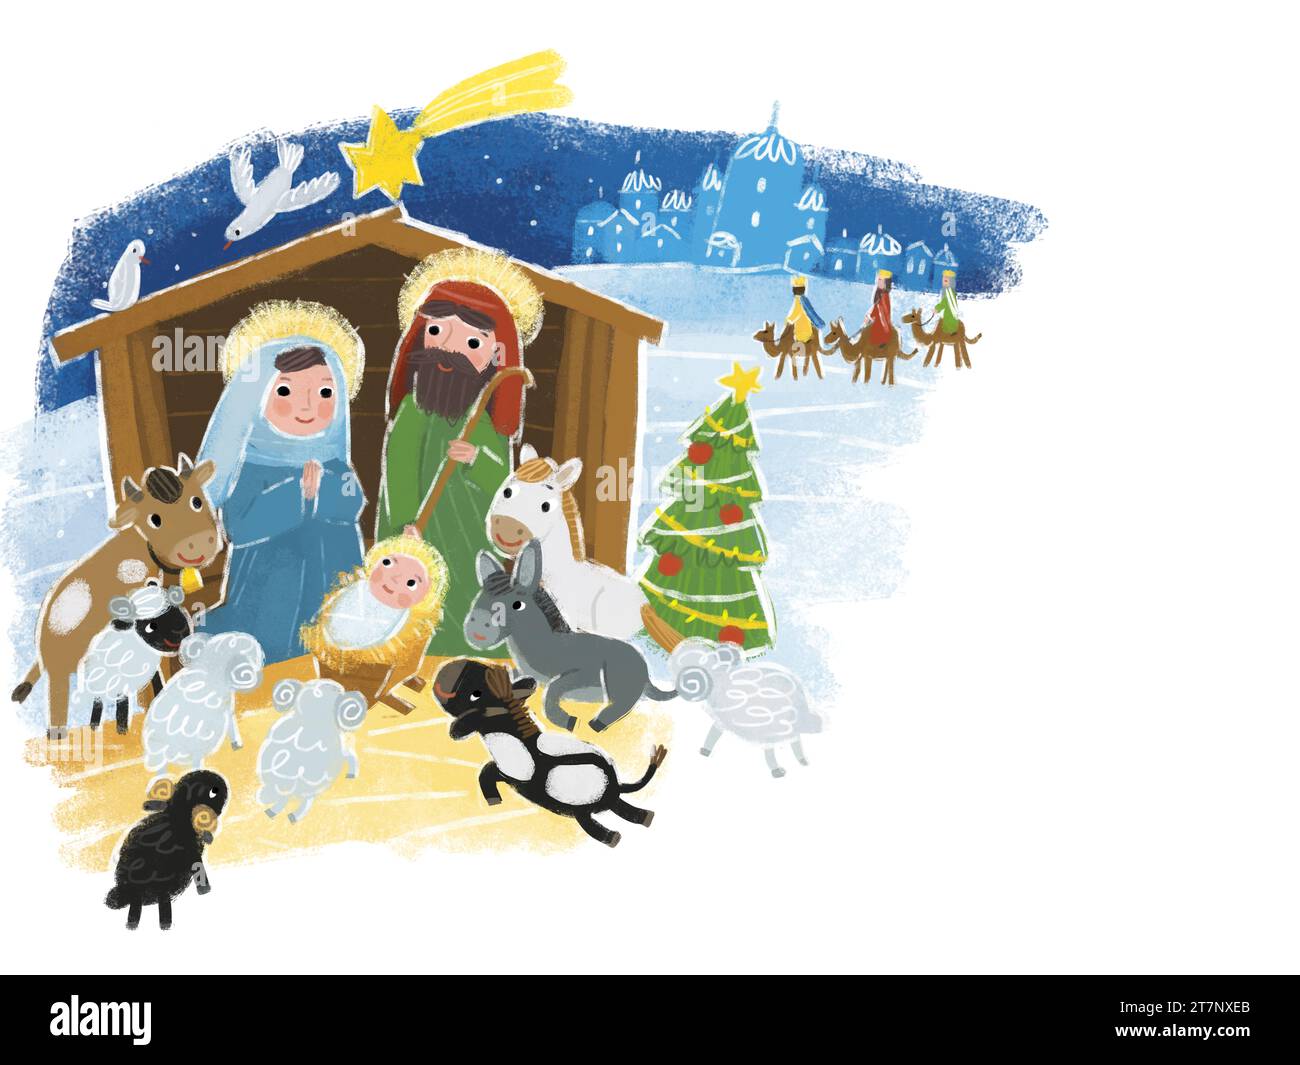 illustration de dessin animé de la sainte famille josef mary illustration de scène traditionnelle pour les enfants Banque D'Images